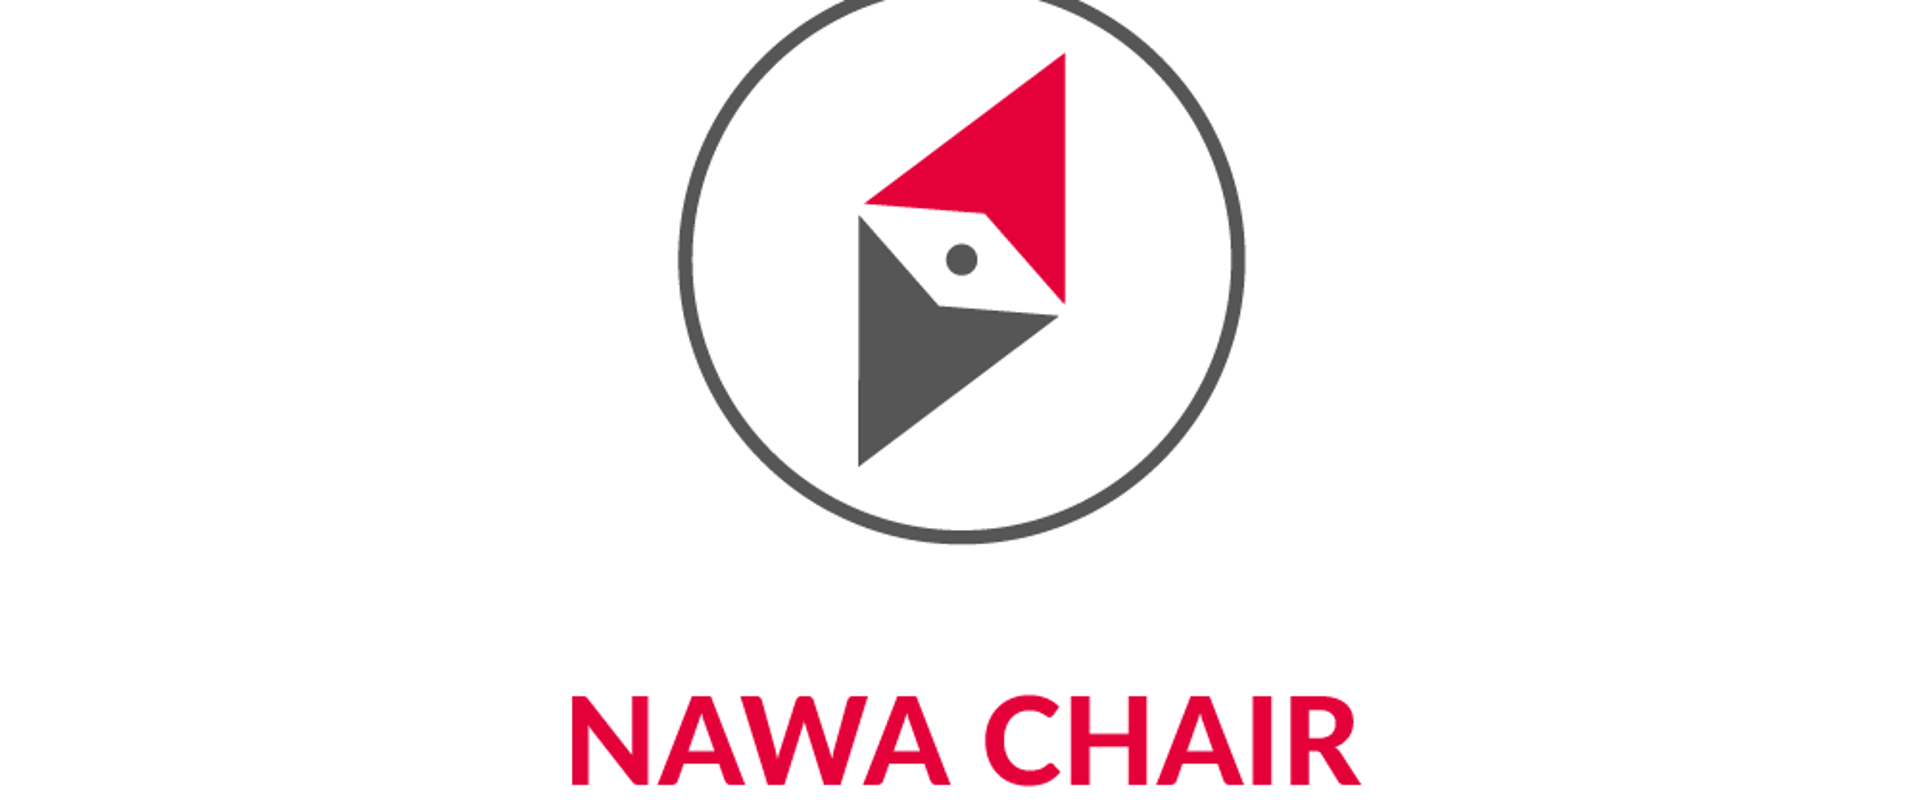 NAWA Chair programme